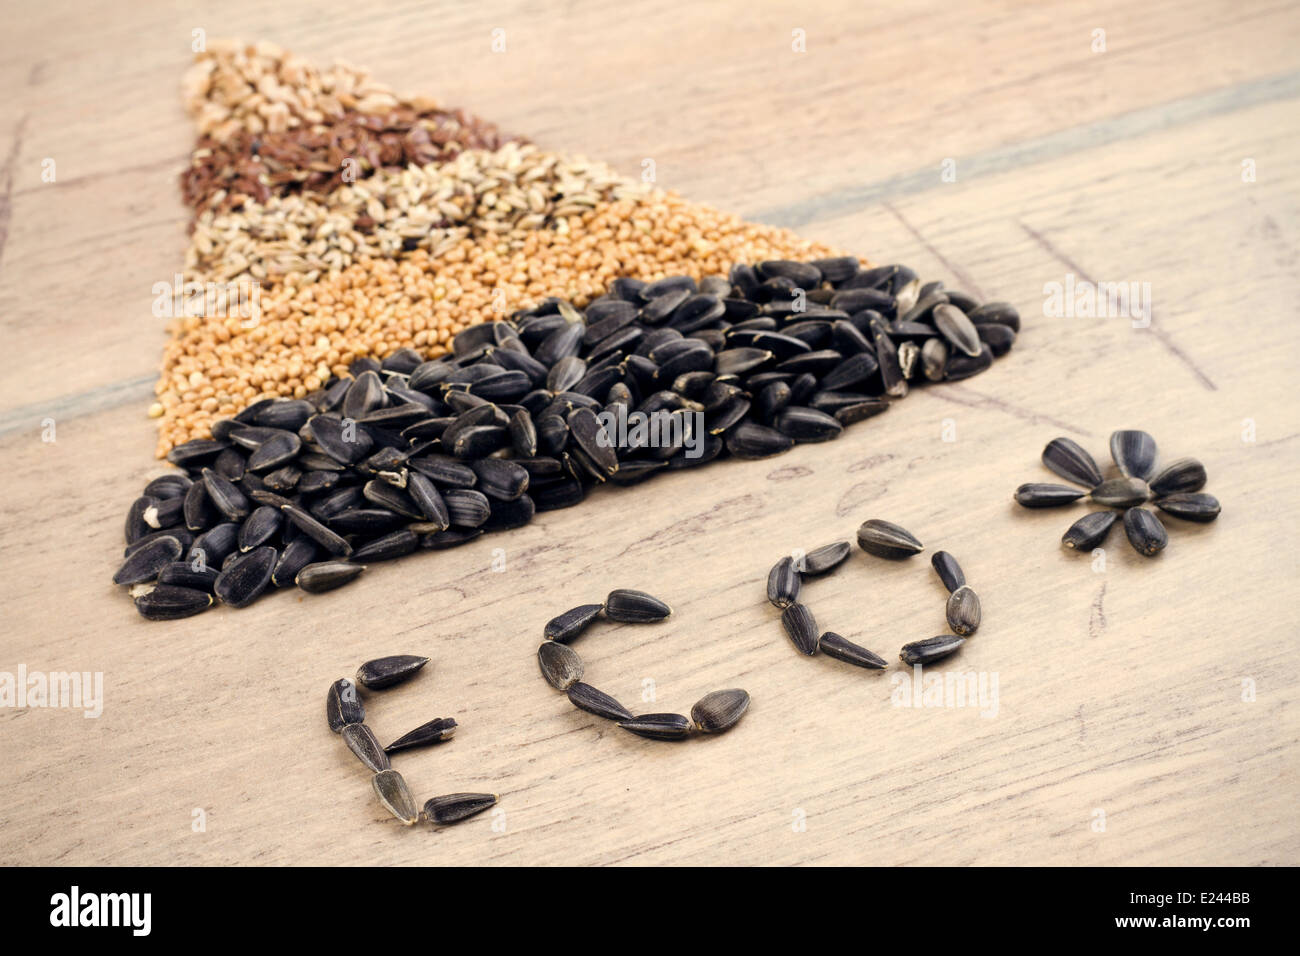 Getreide und Samen: Roggen, Weizen, Gerste, Hafer, Sonnenblumen, Flachs Stockfoto